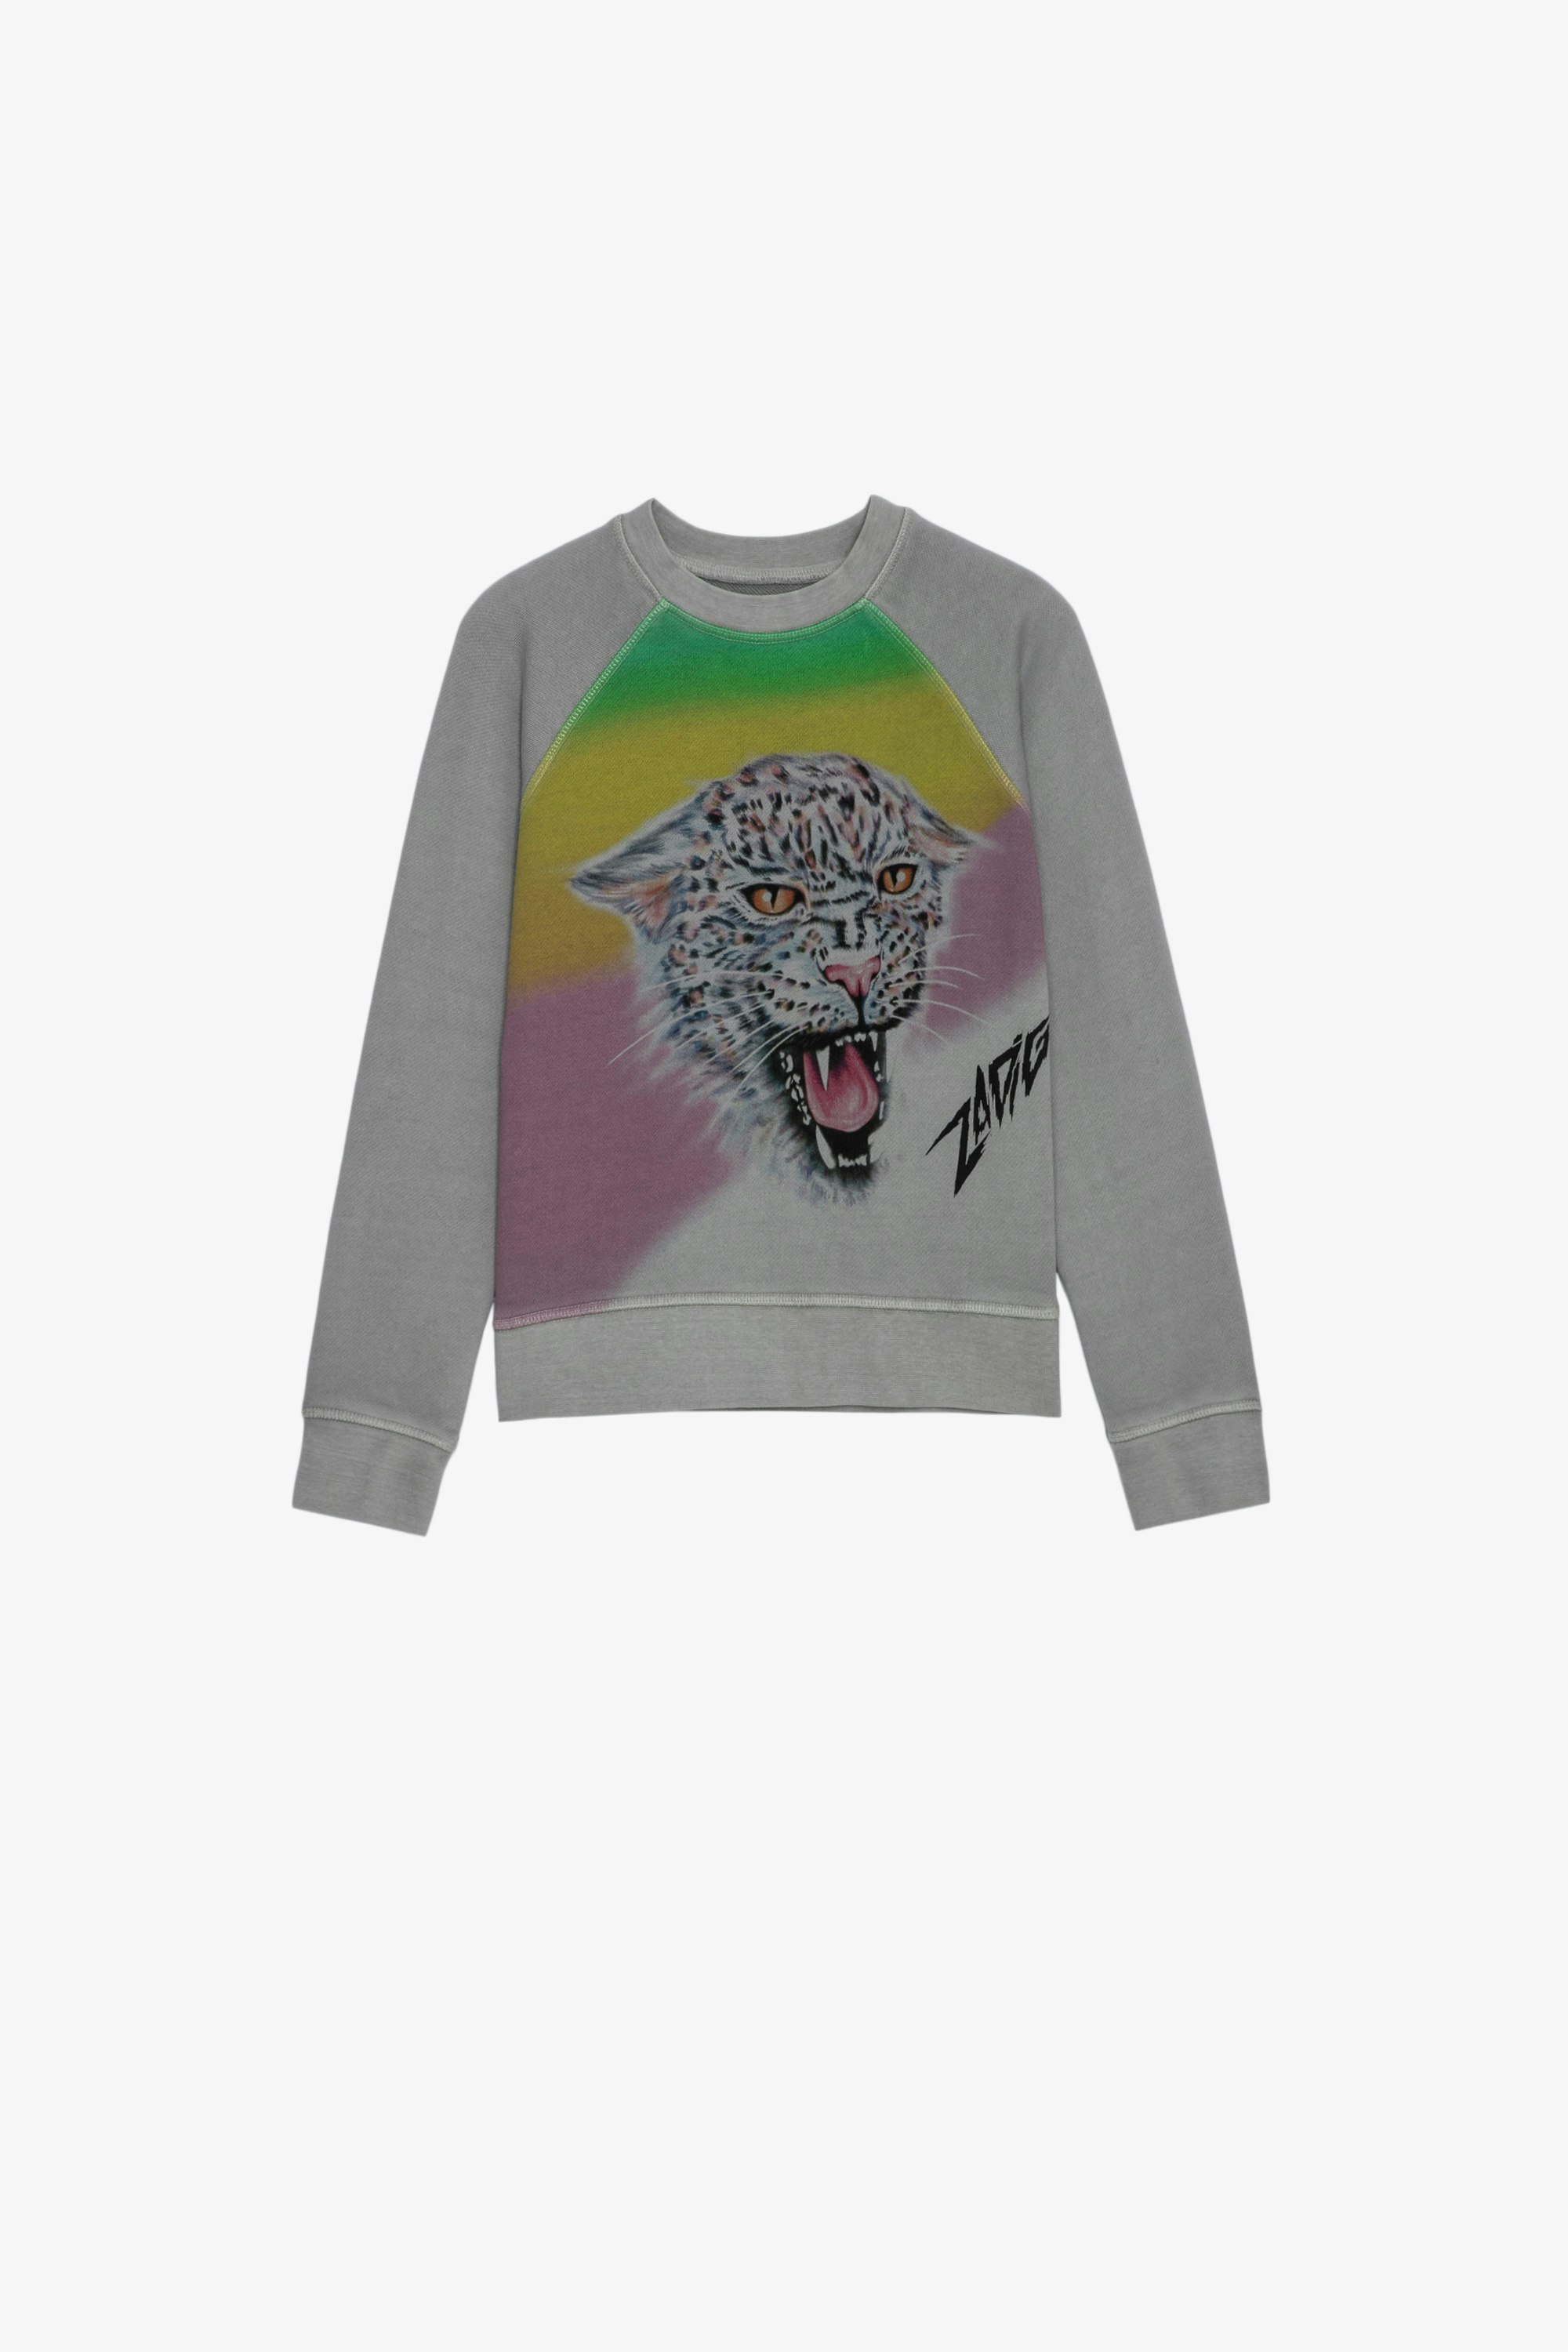 Kinder-Sweatshirt Upper Mehrfarbiges Kinder-Sweatshirt aus grauer Baumwolle mit Jaguar-Motiv 